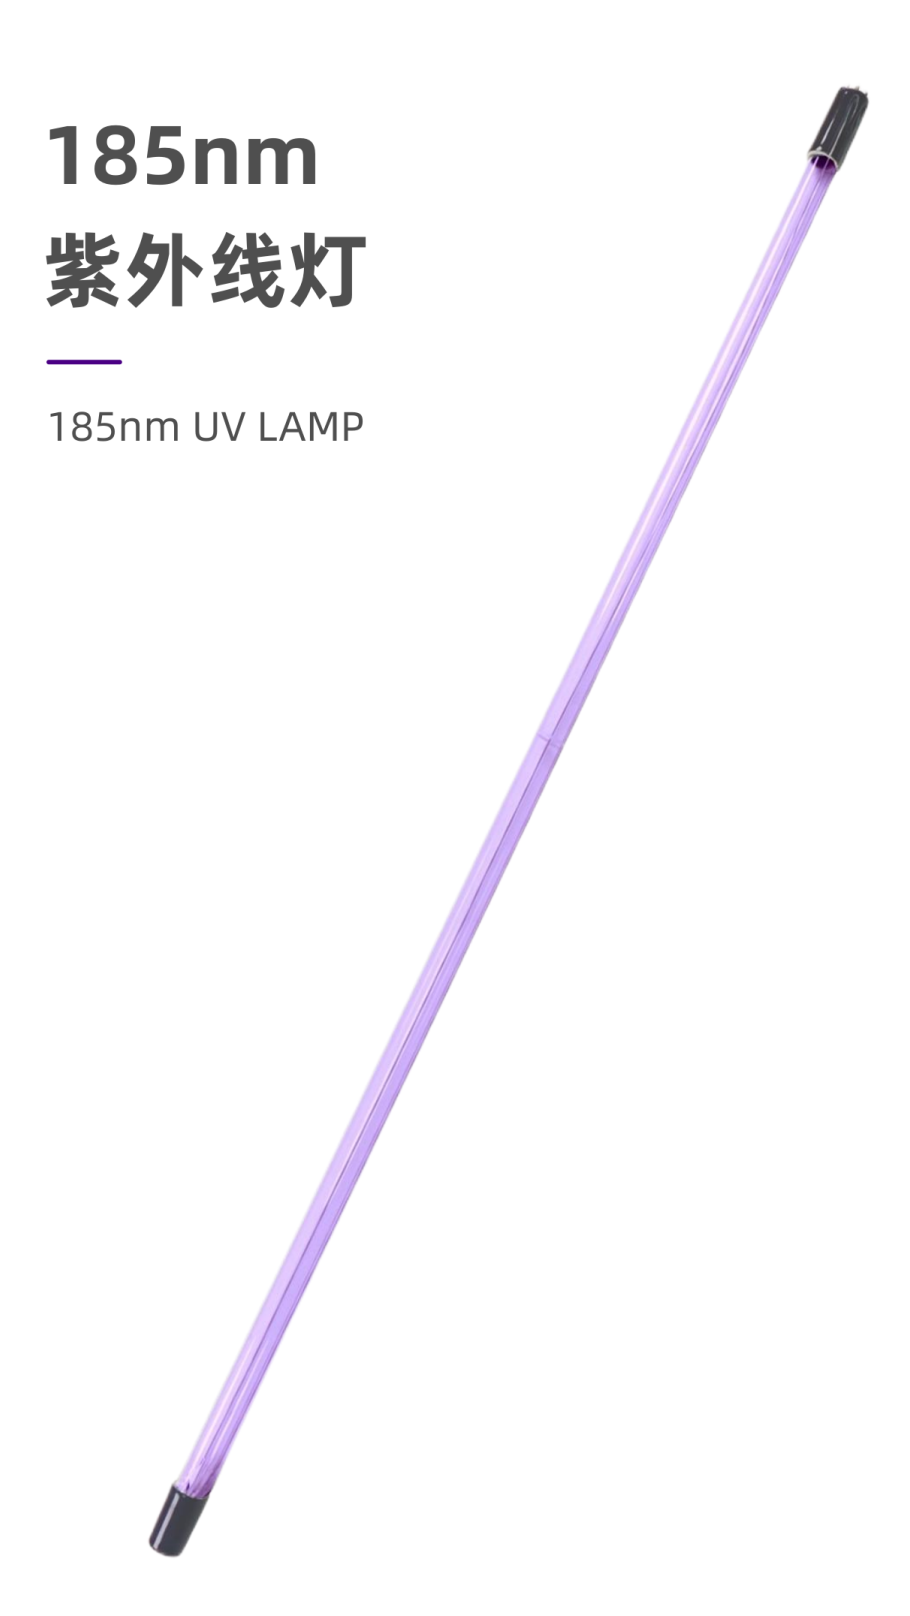 185nm UV LAMP